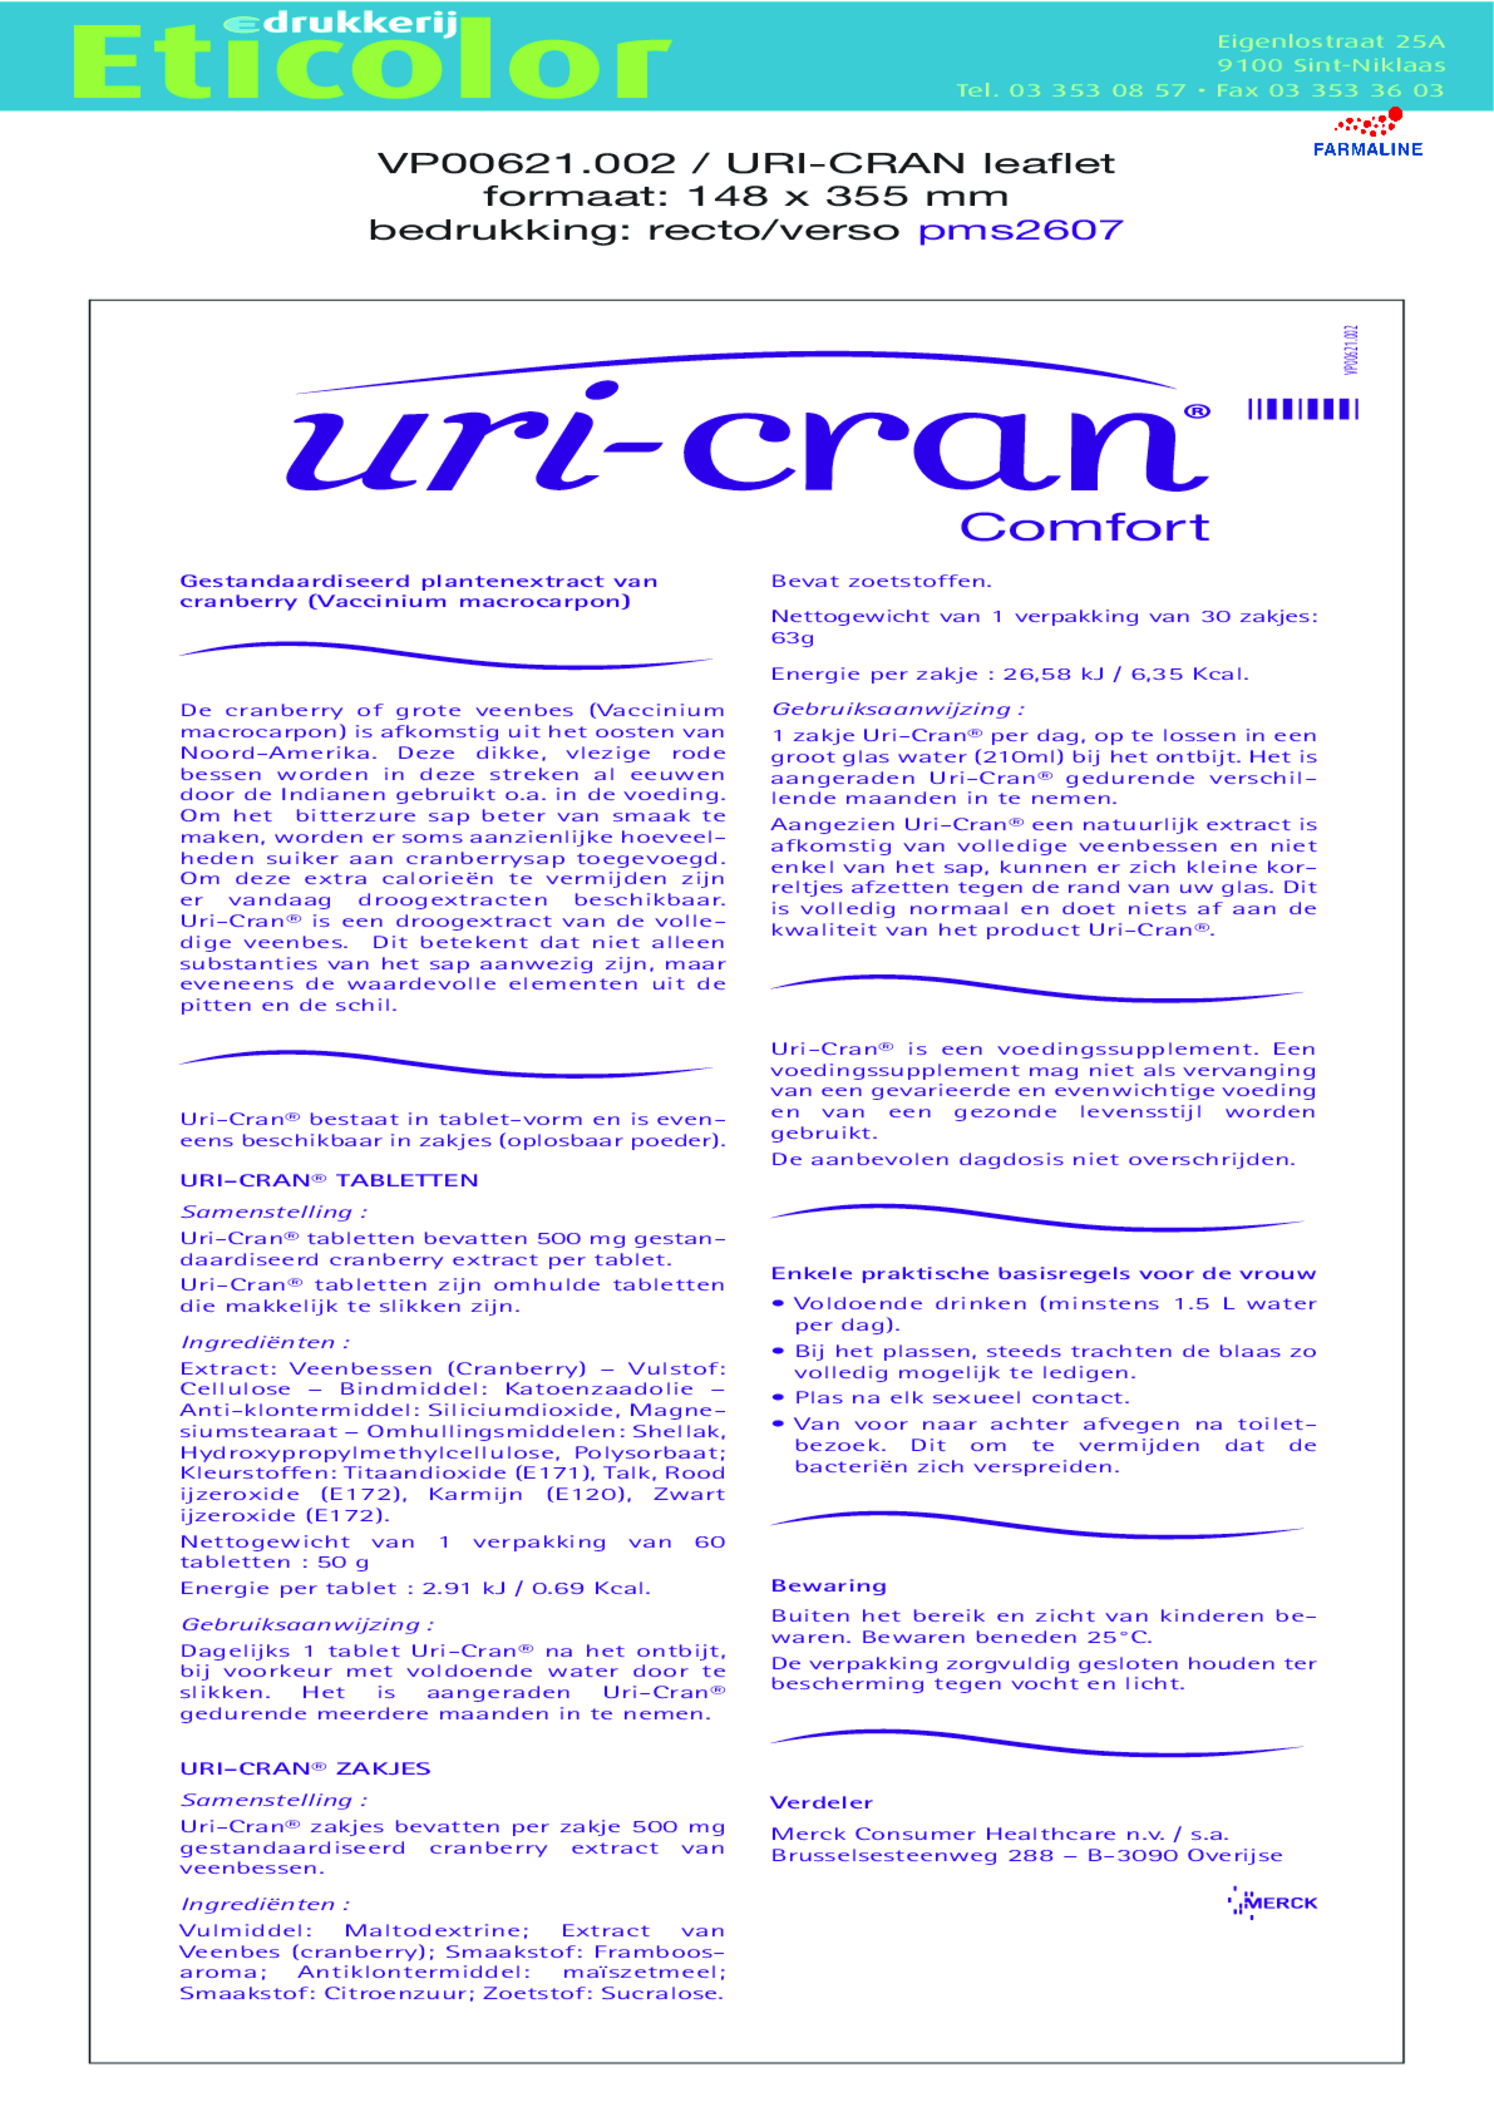 U-Cran Comfort Cranberry Tabletten afbeelding van document #1, gebruiksaanwijzing